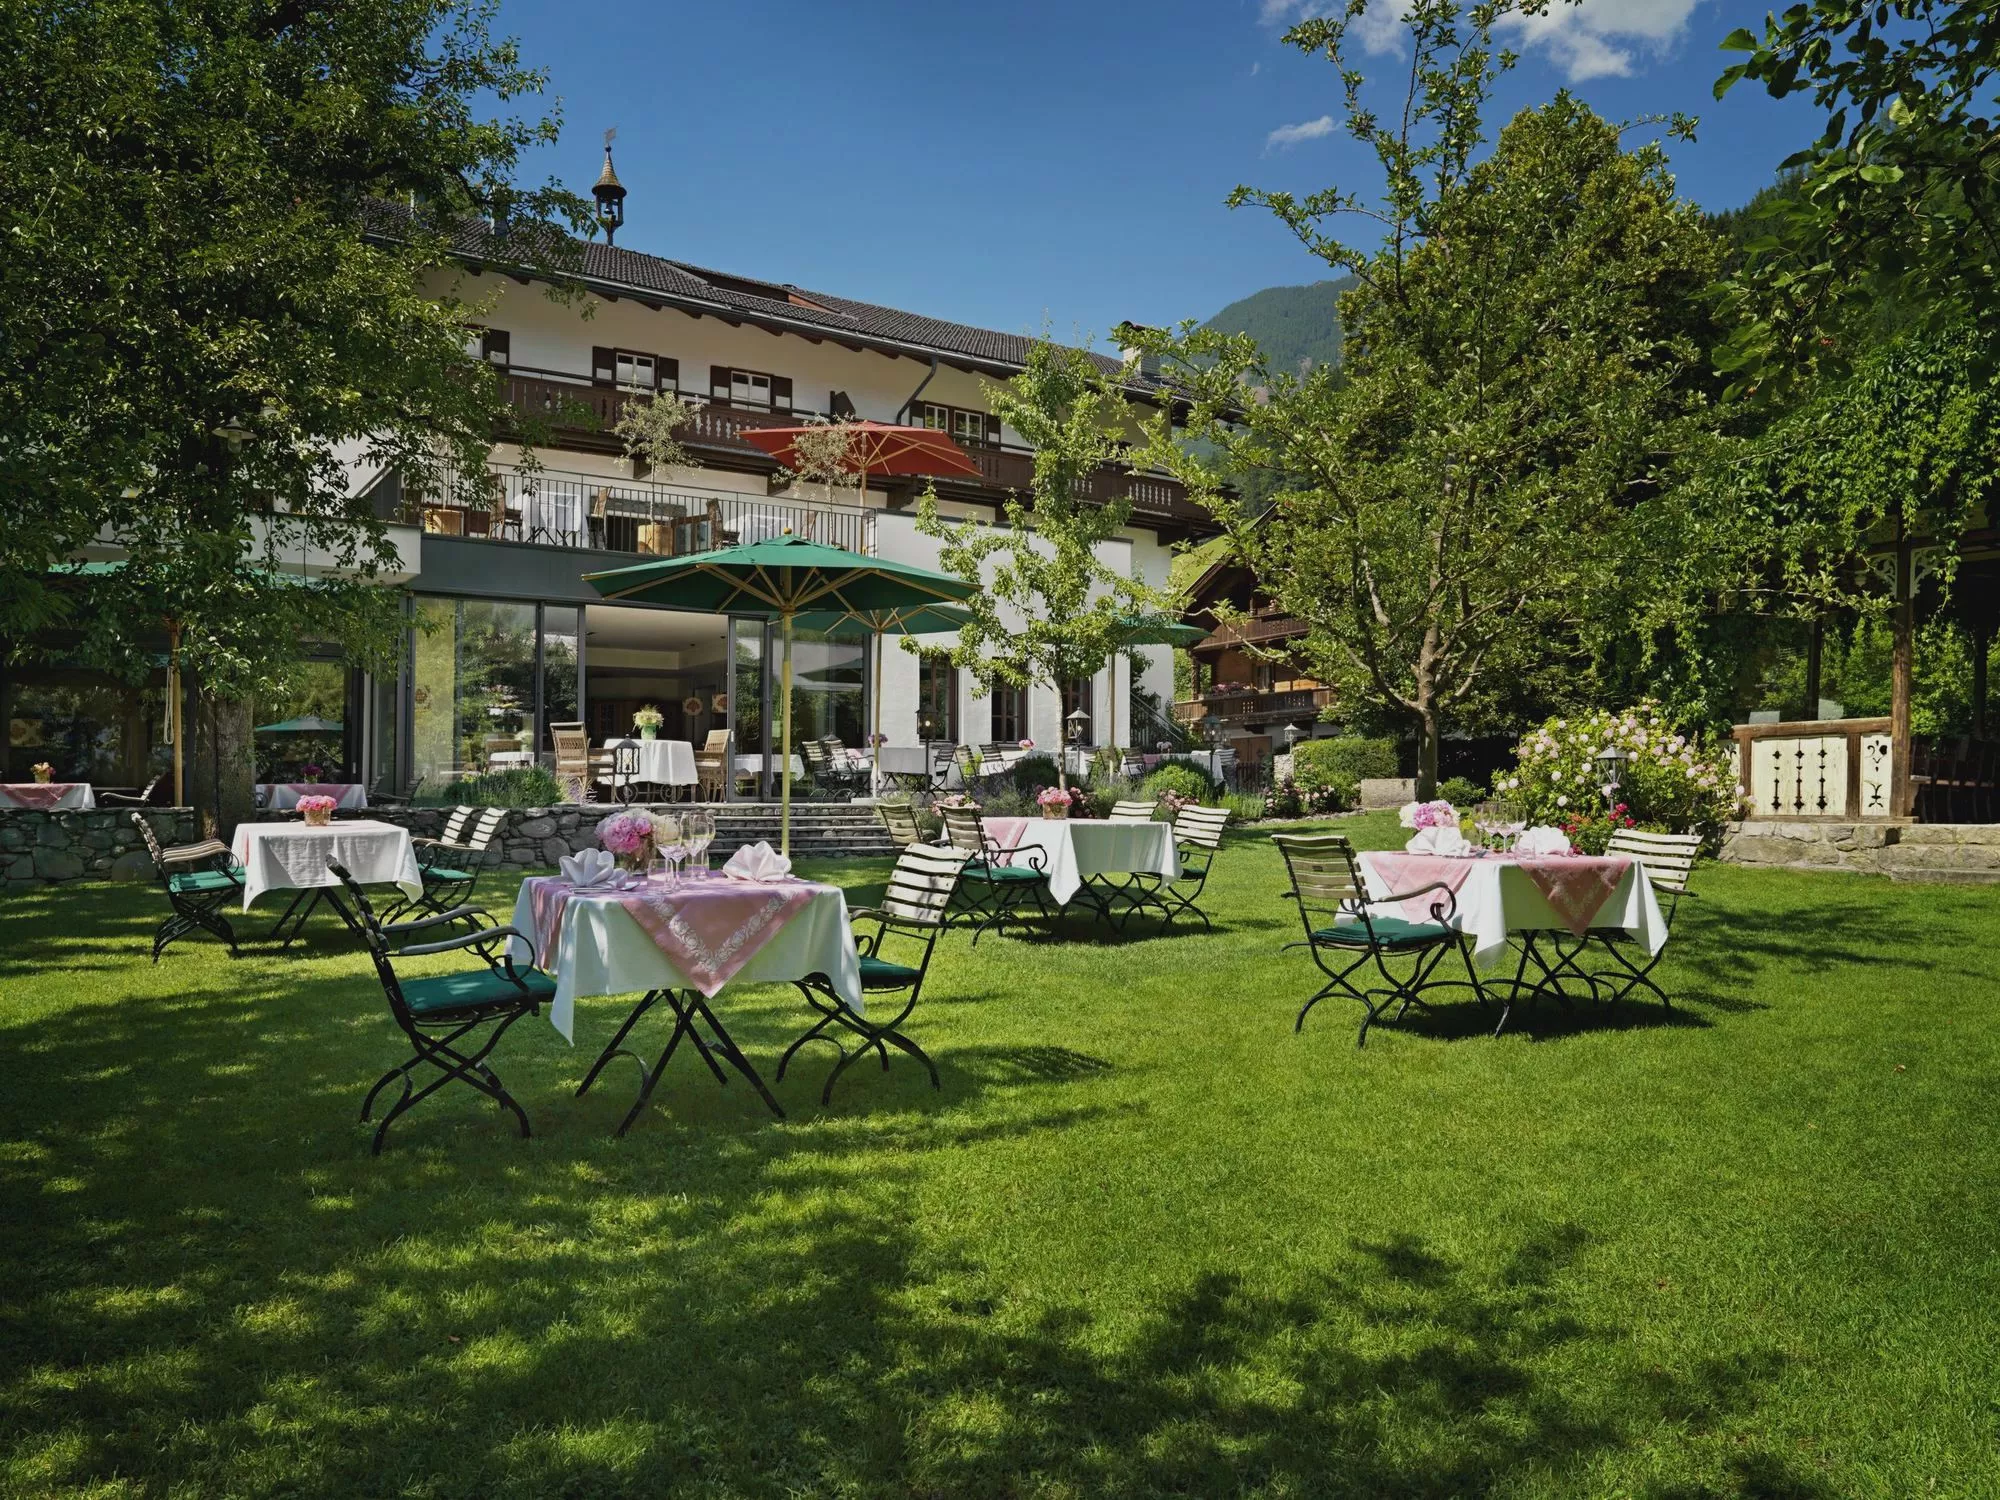 Hotel Landgasthof Linde mit Garten in Stumm, Zillertal, Tirol (c) Foto Heli Hinkel